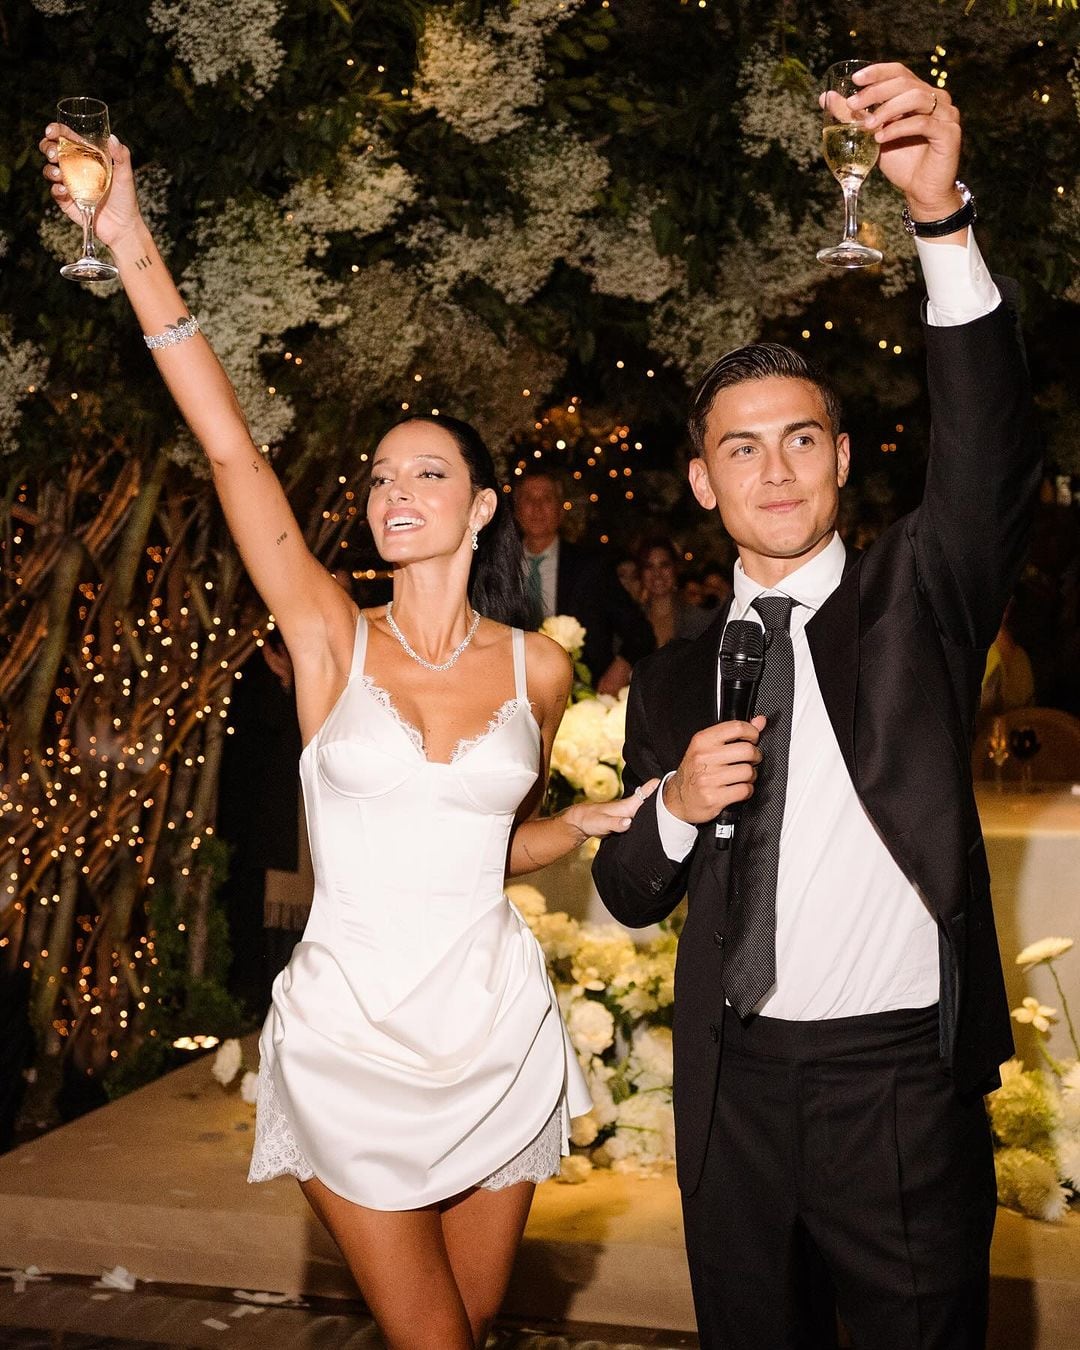 Casamiento de Oriana Sabatini y Paulo Dybala: la noche de fiesta